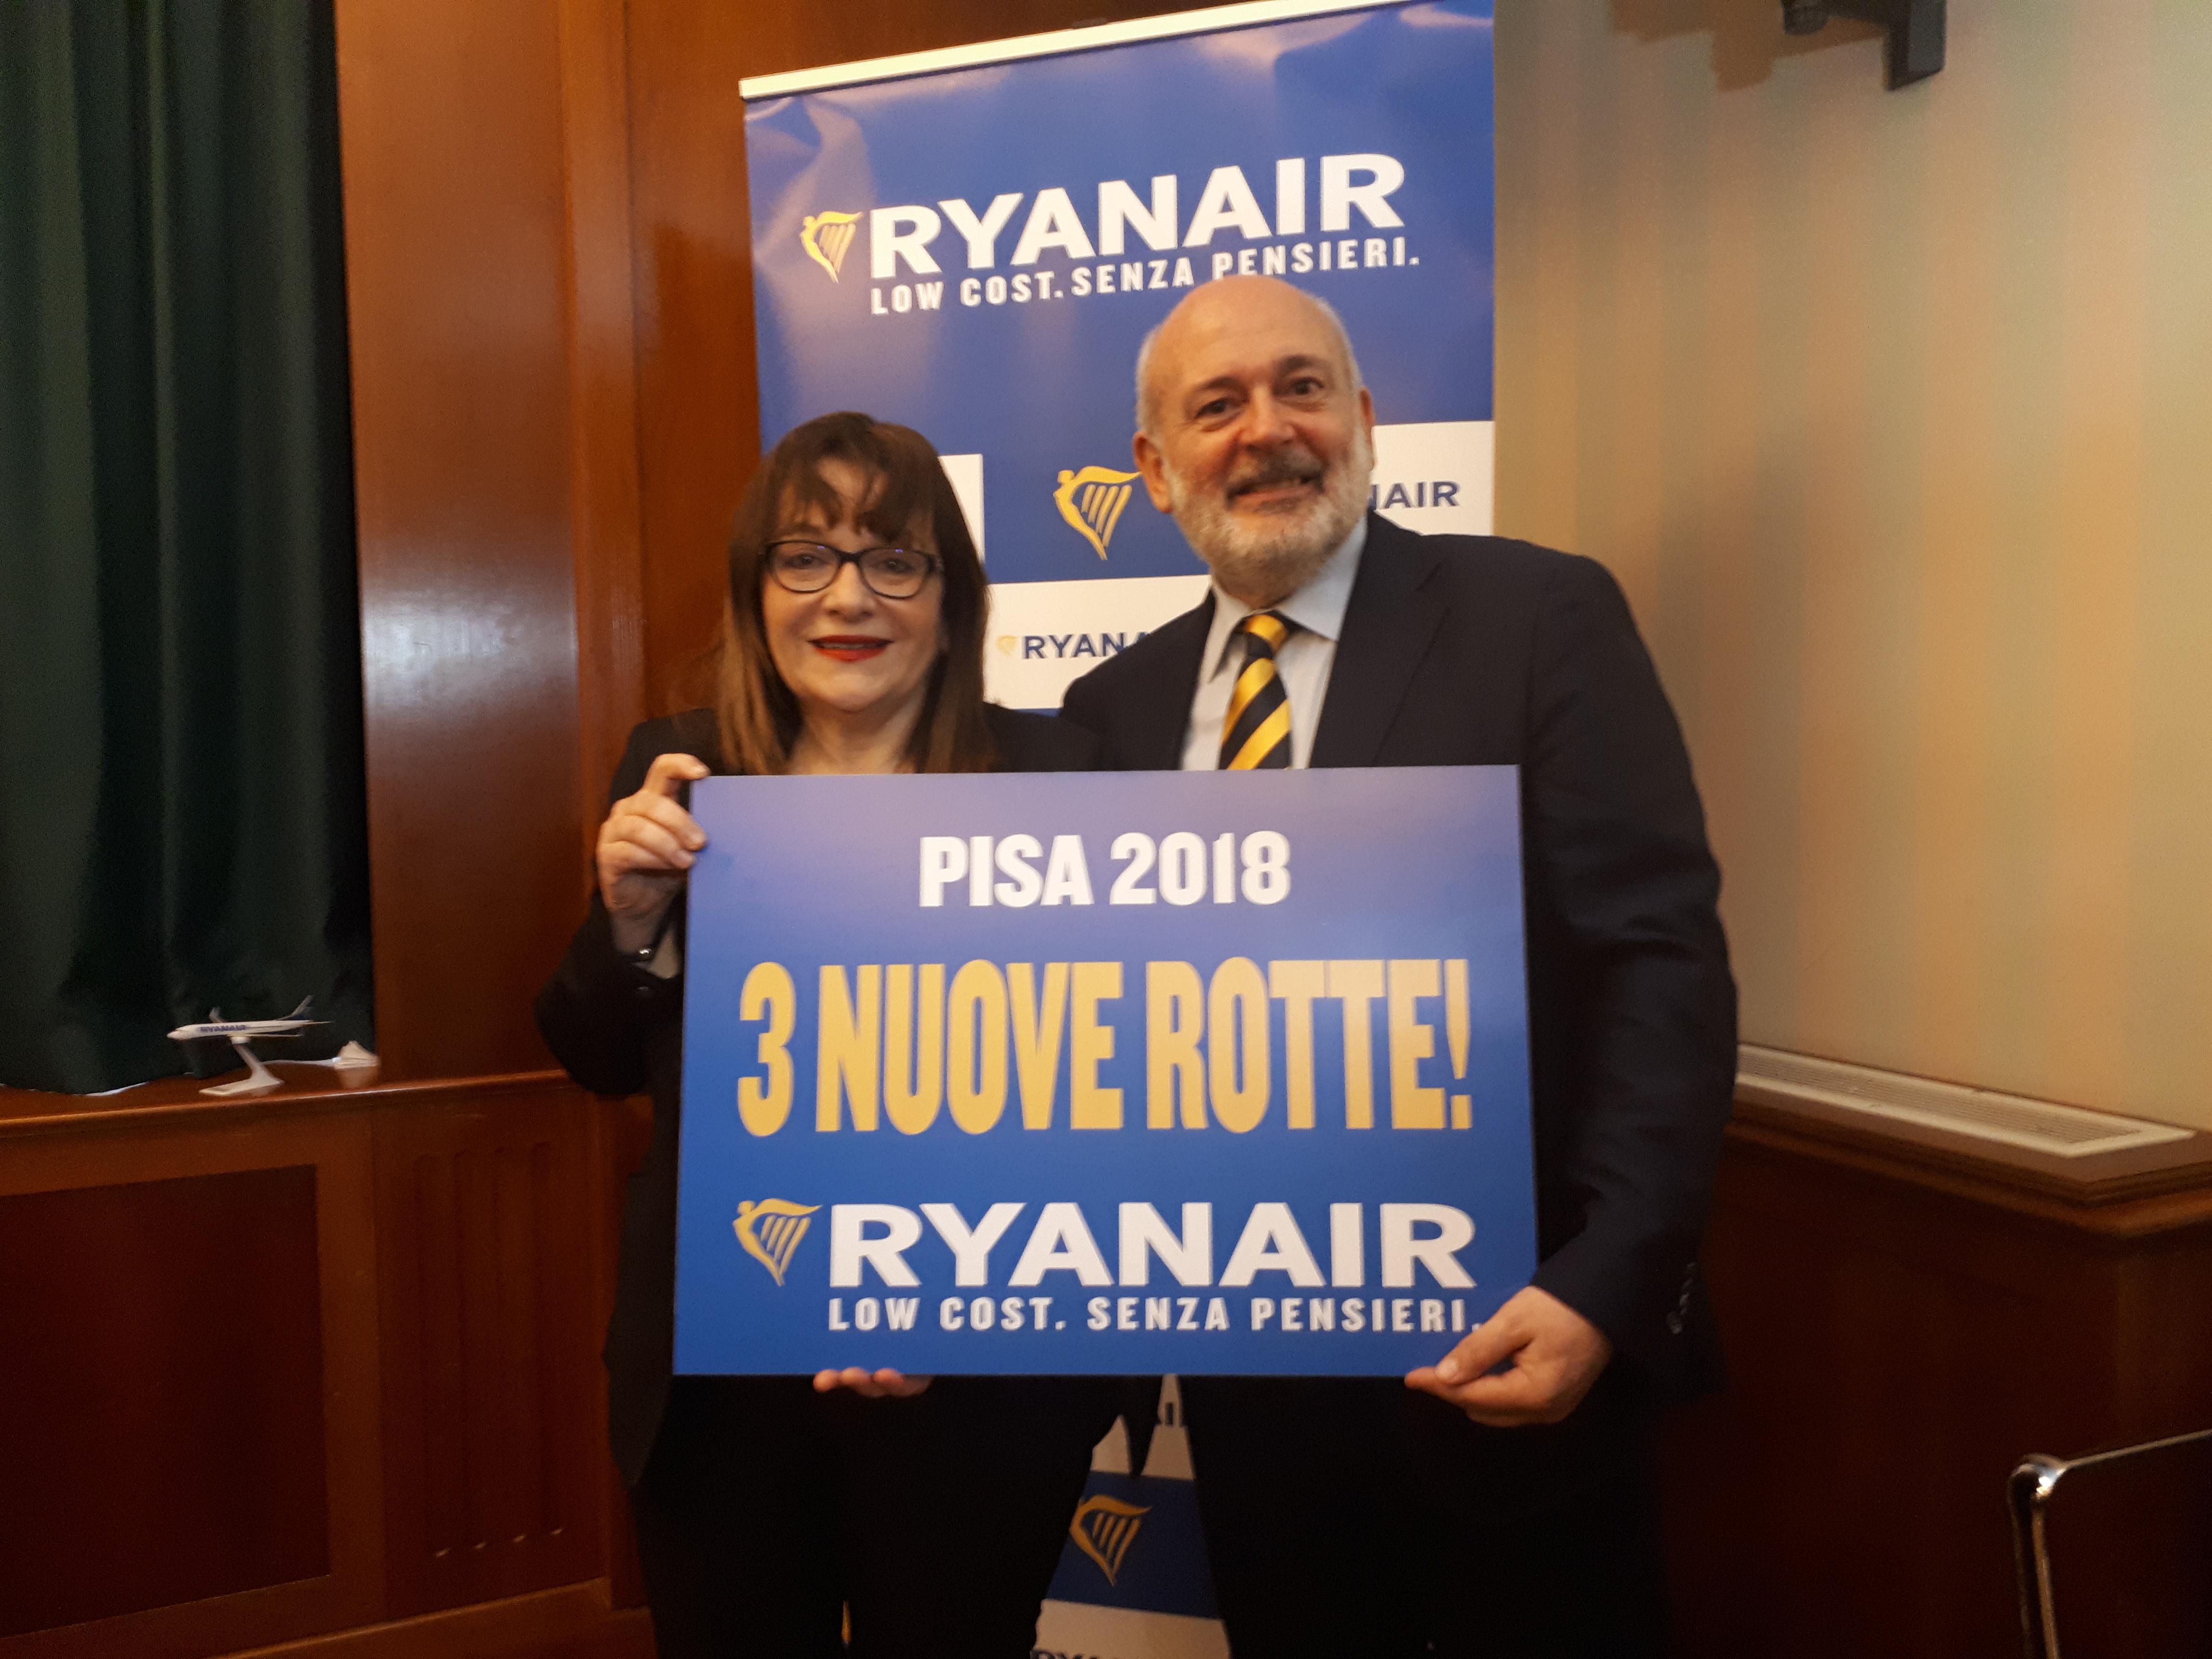 Ryanair Basa Un Ulteriore Aeromobile A Pisa A Supporto Della Stagione Estiva 2018 Lanciate 1 Nuova Rotta Per L’estate E 2 Nuove Rotte Per L’inverno